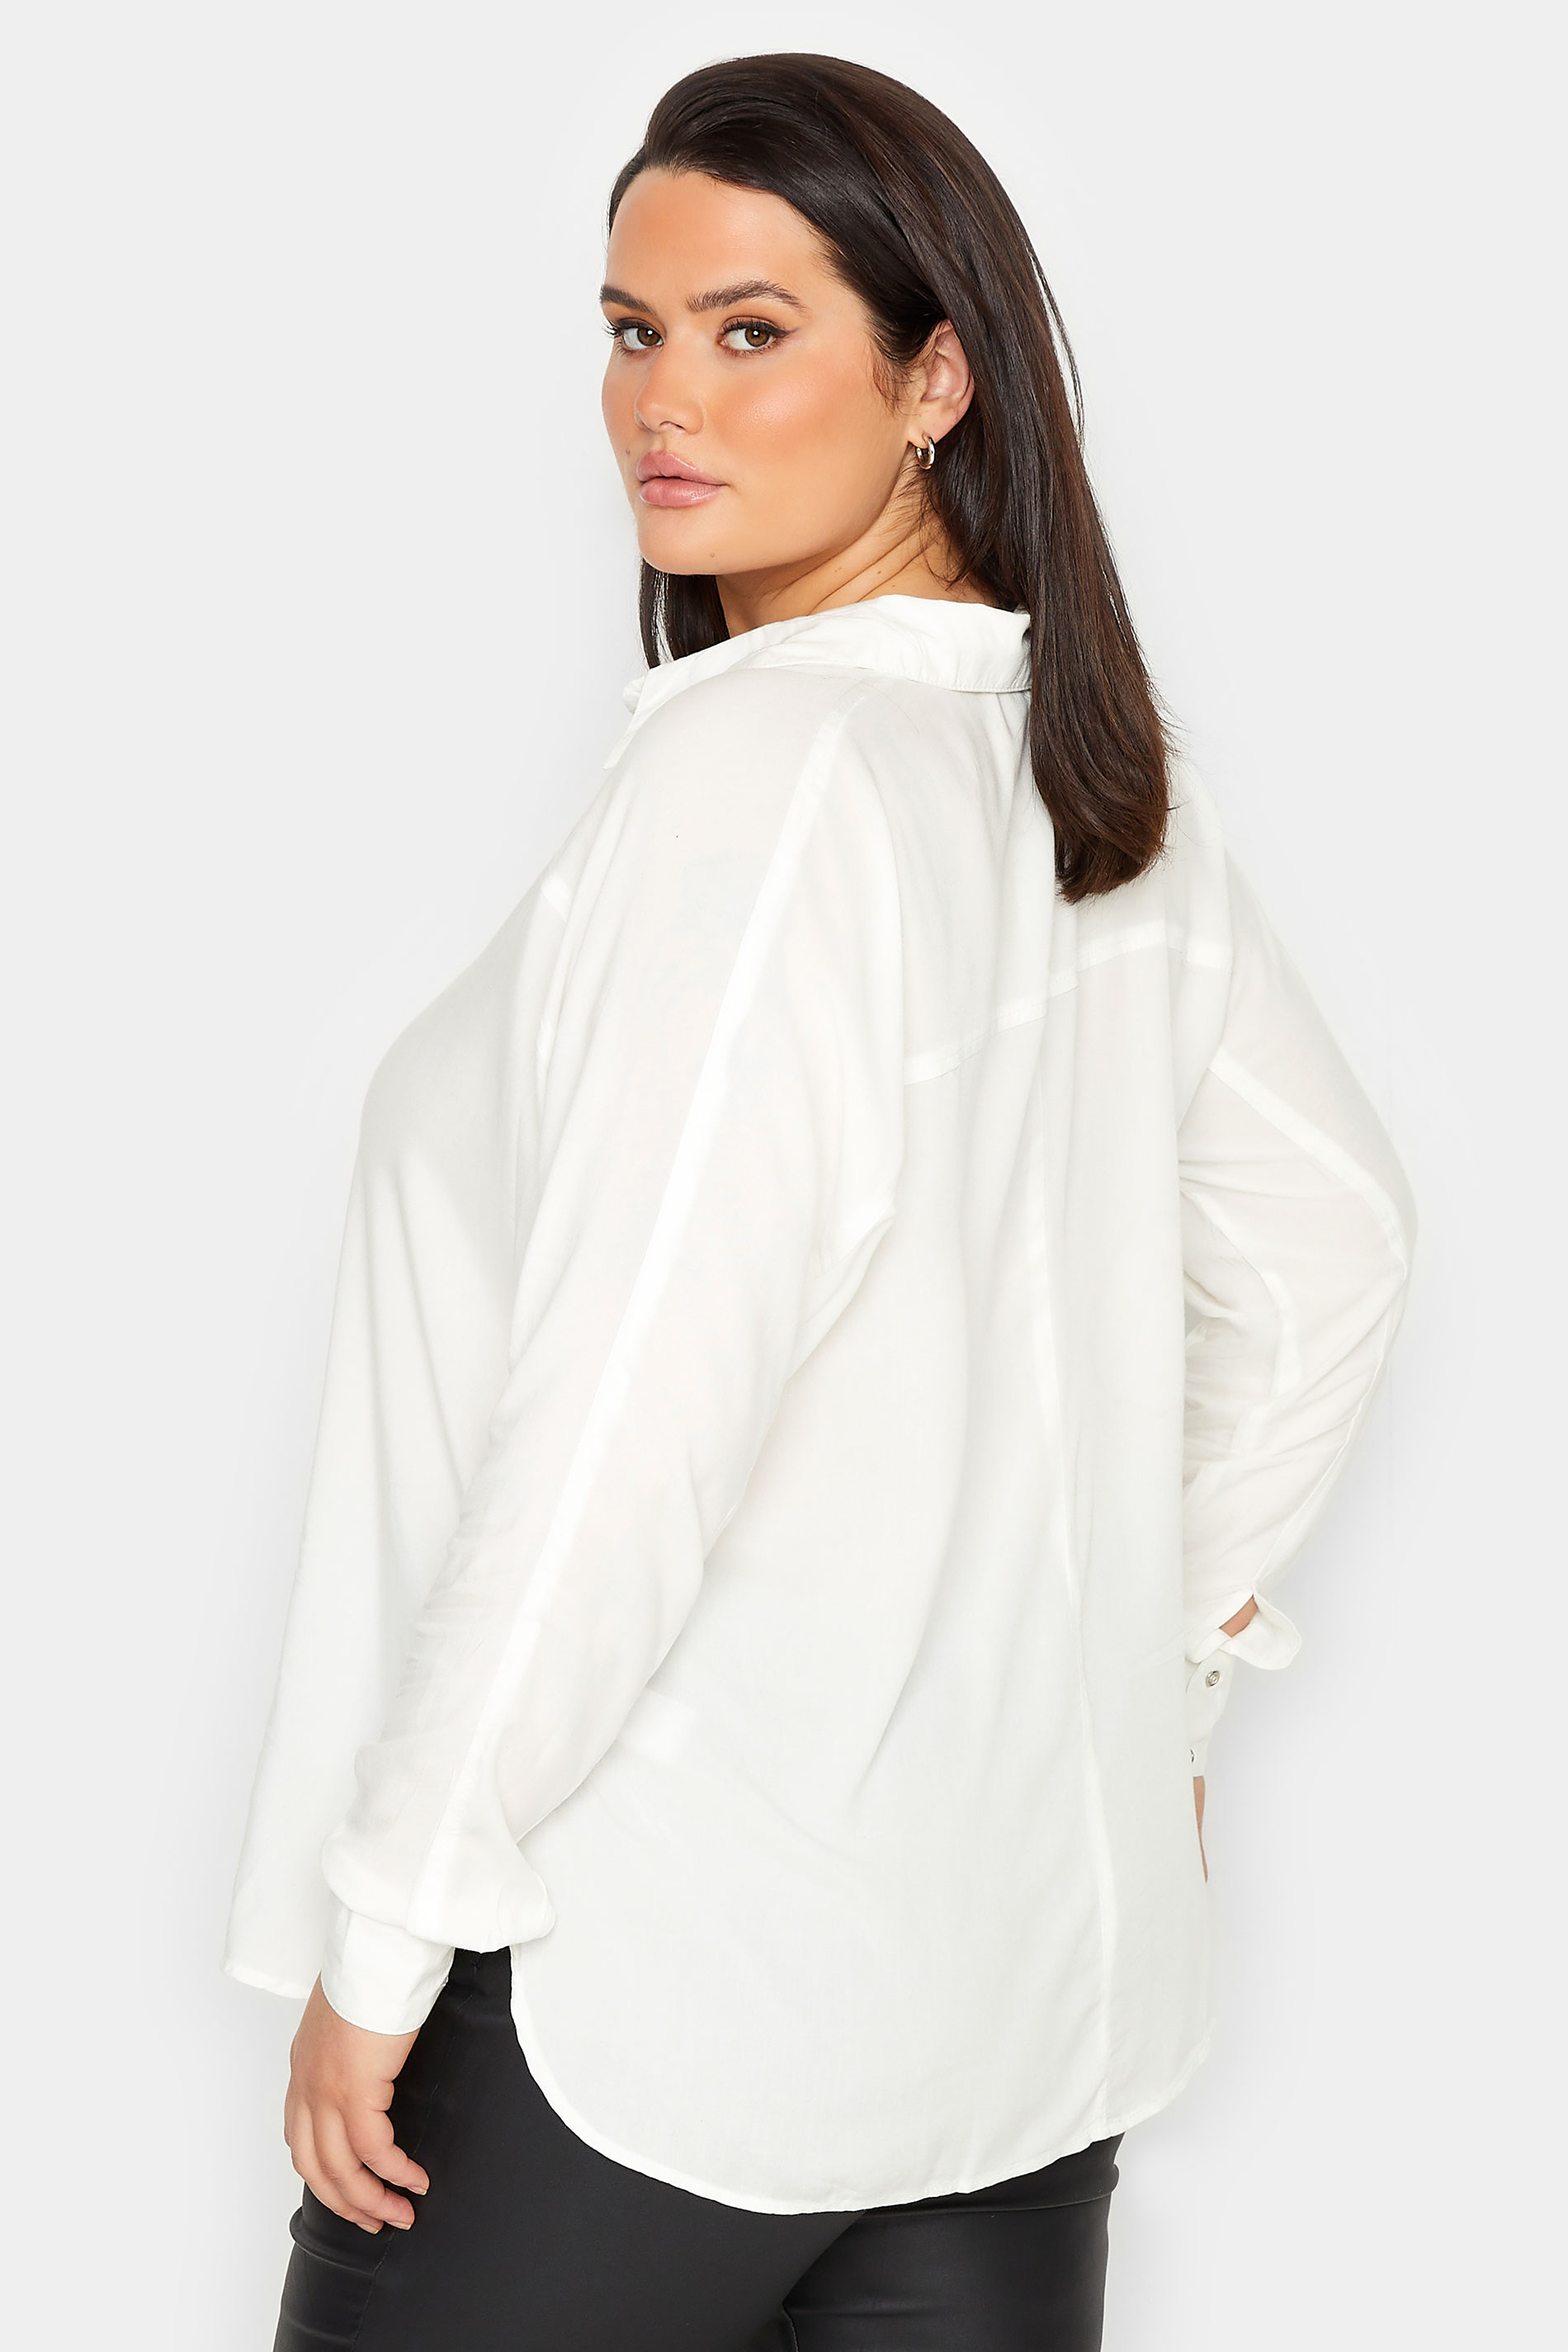 LTS Tall Women's White Long Sleeve Shirt | Long Tall Sally 3